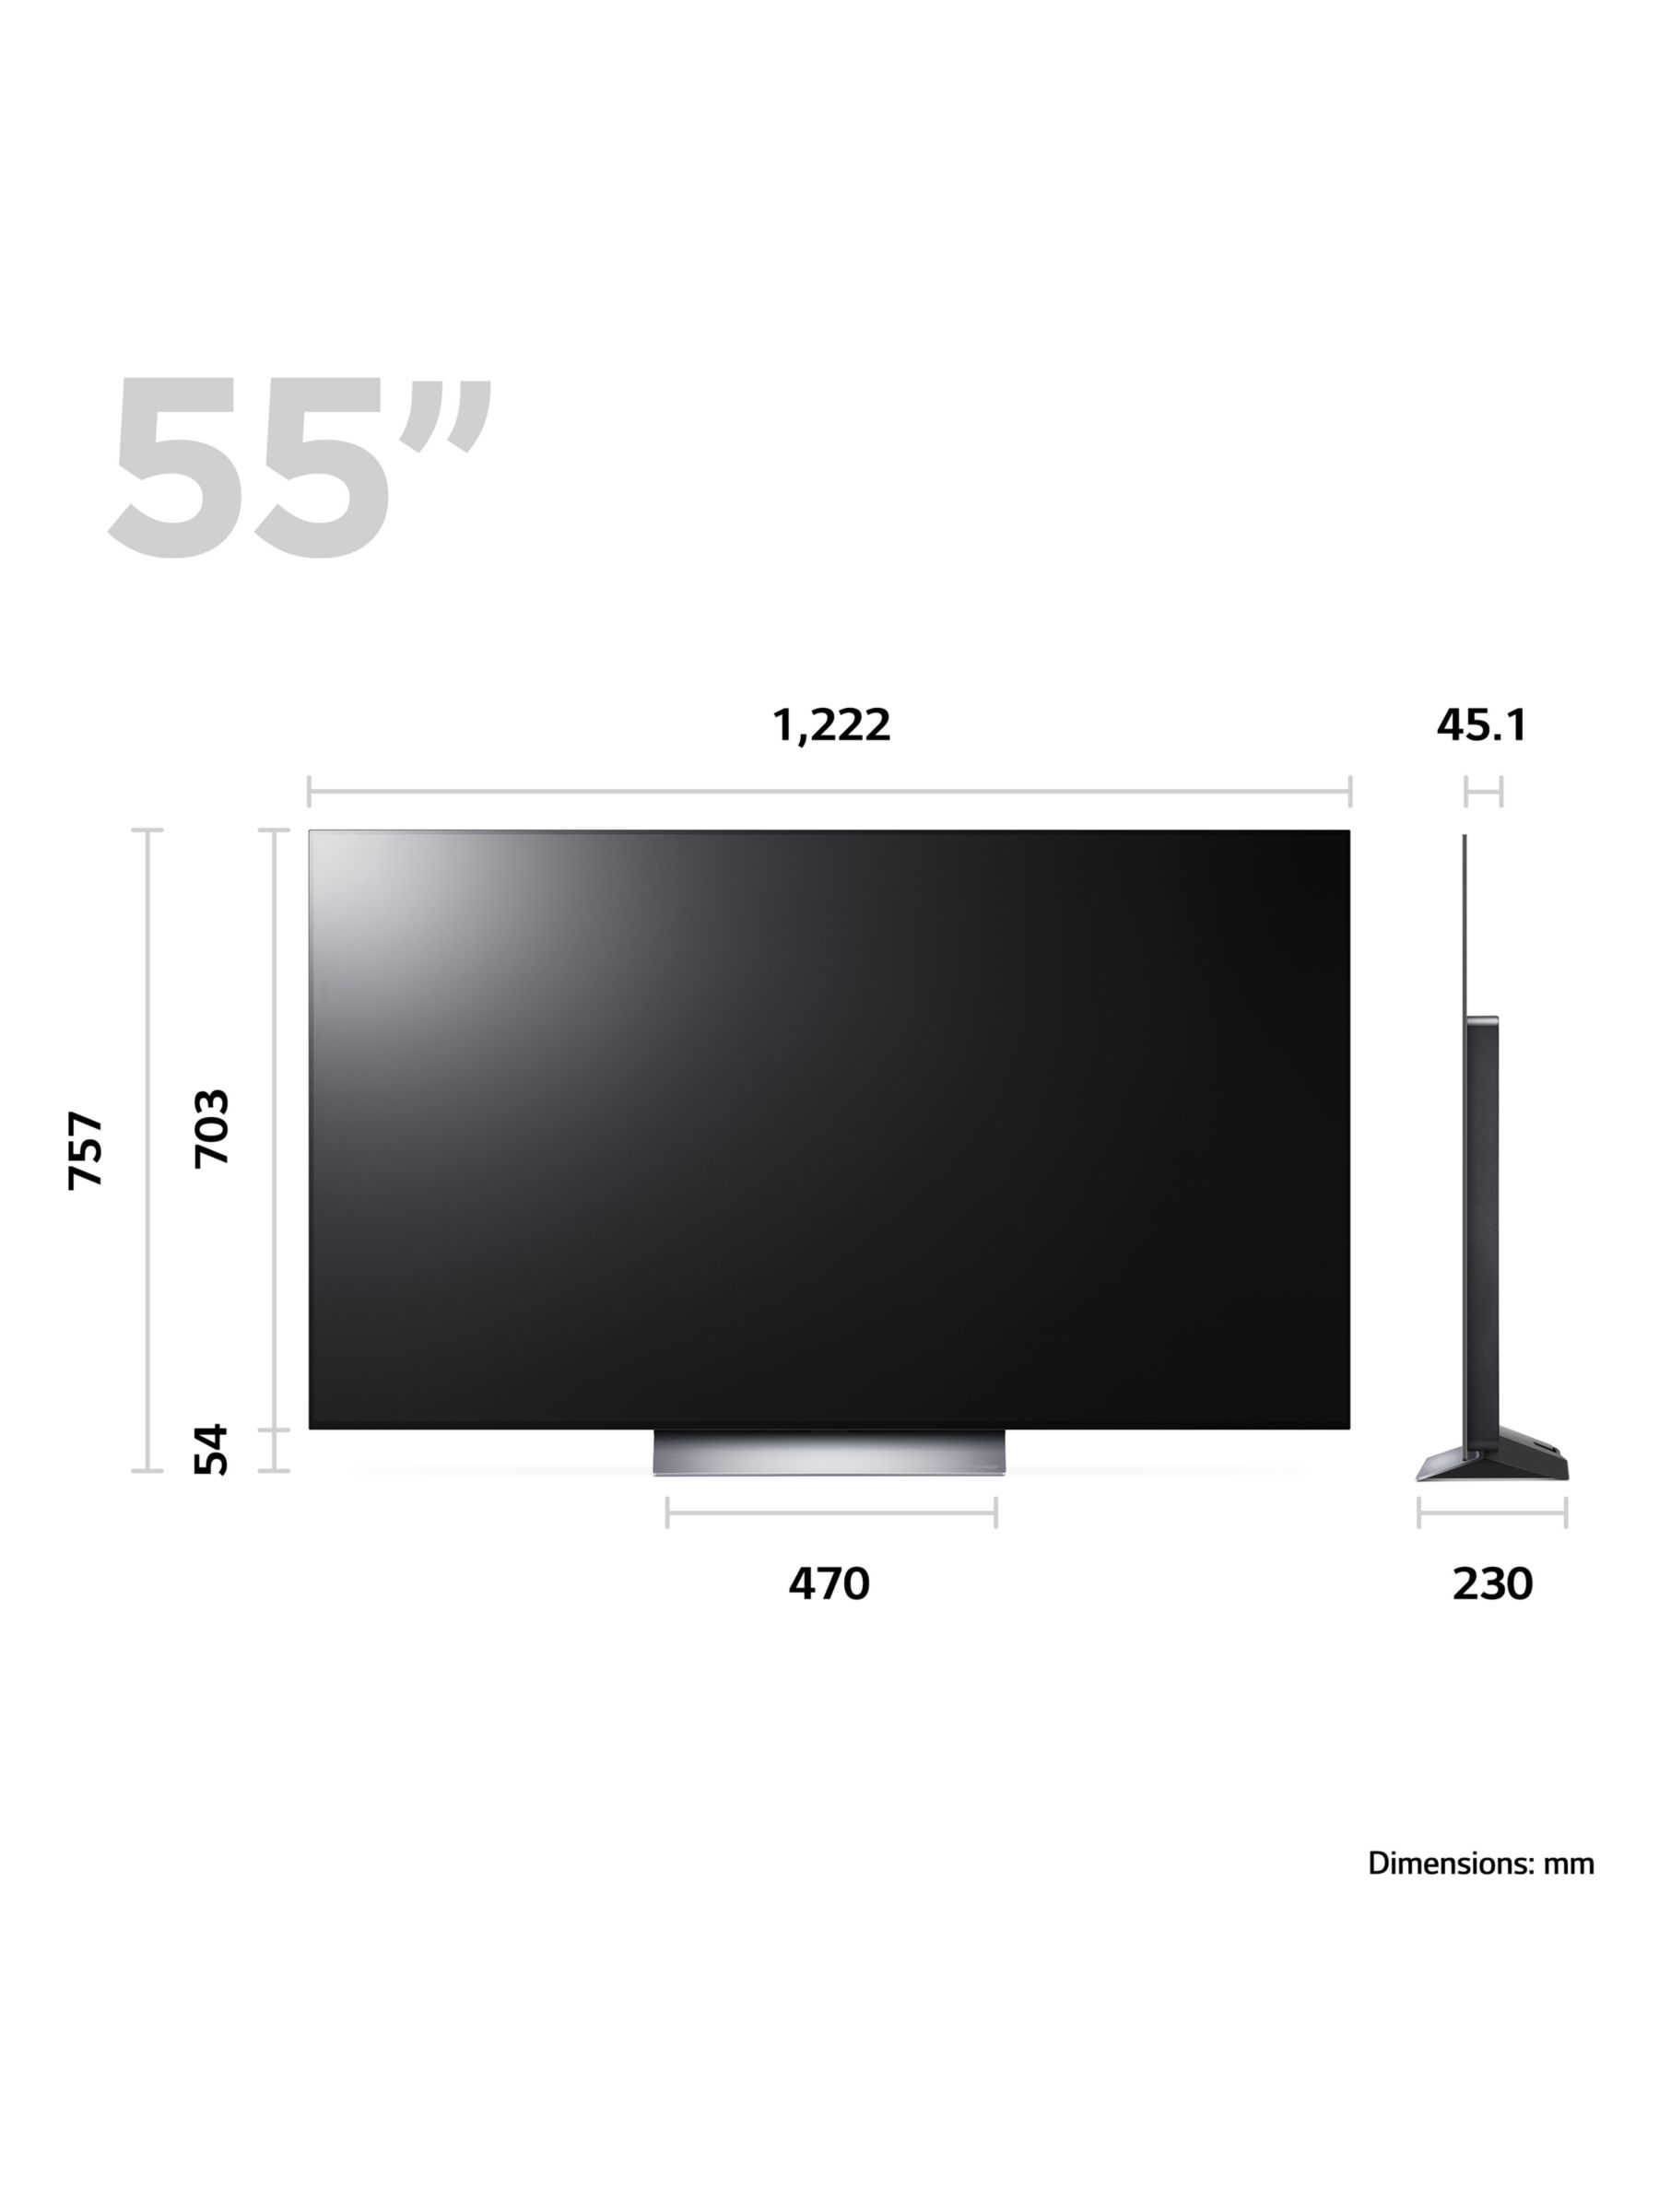 LG C3 OLED TV hands on! Best TV gets better? 